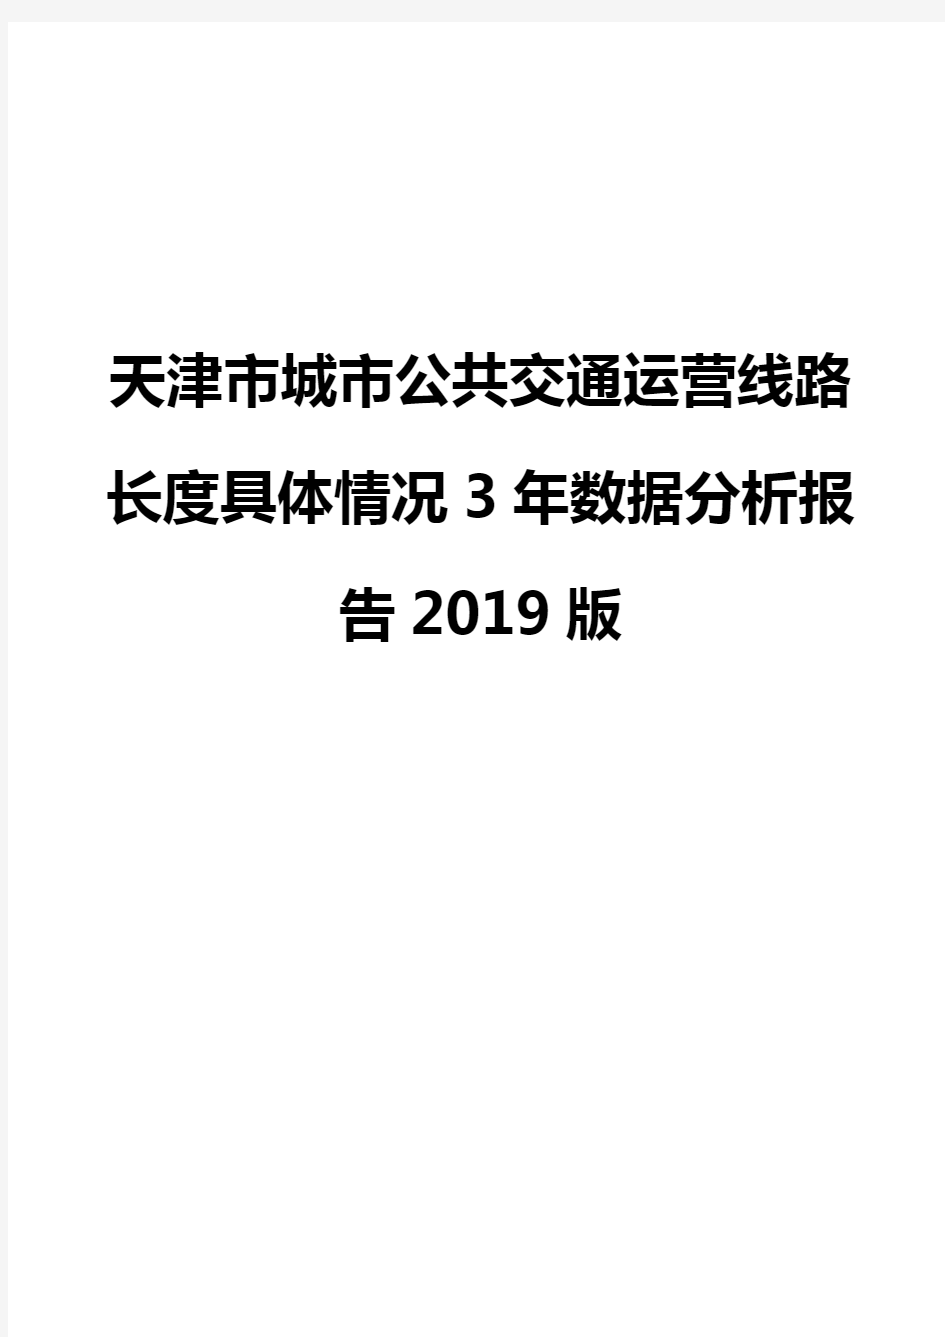 天津市城市公共交通运营线路长度具体情况3年数据分析报告2019版